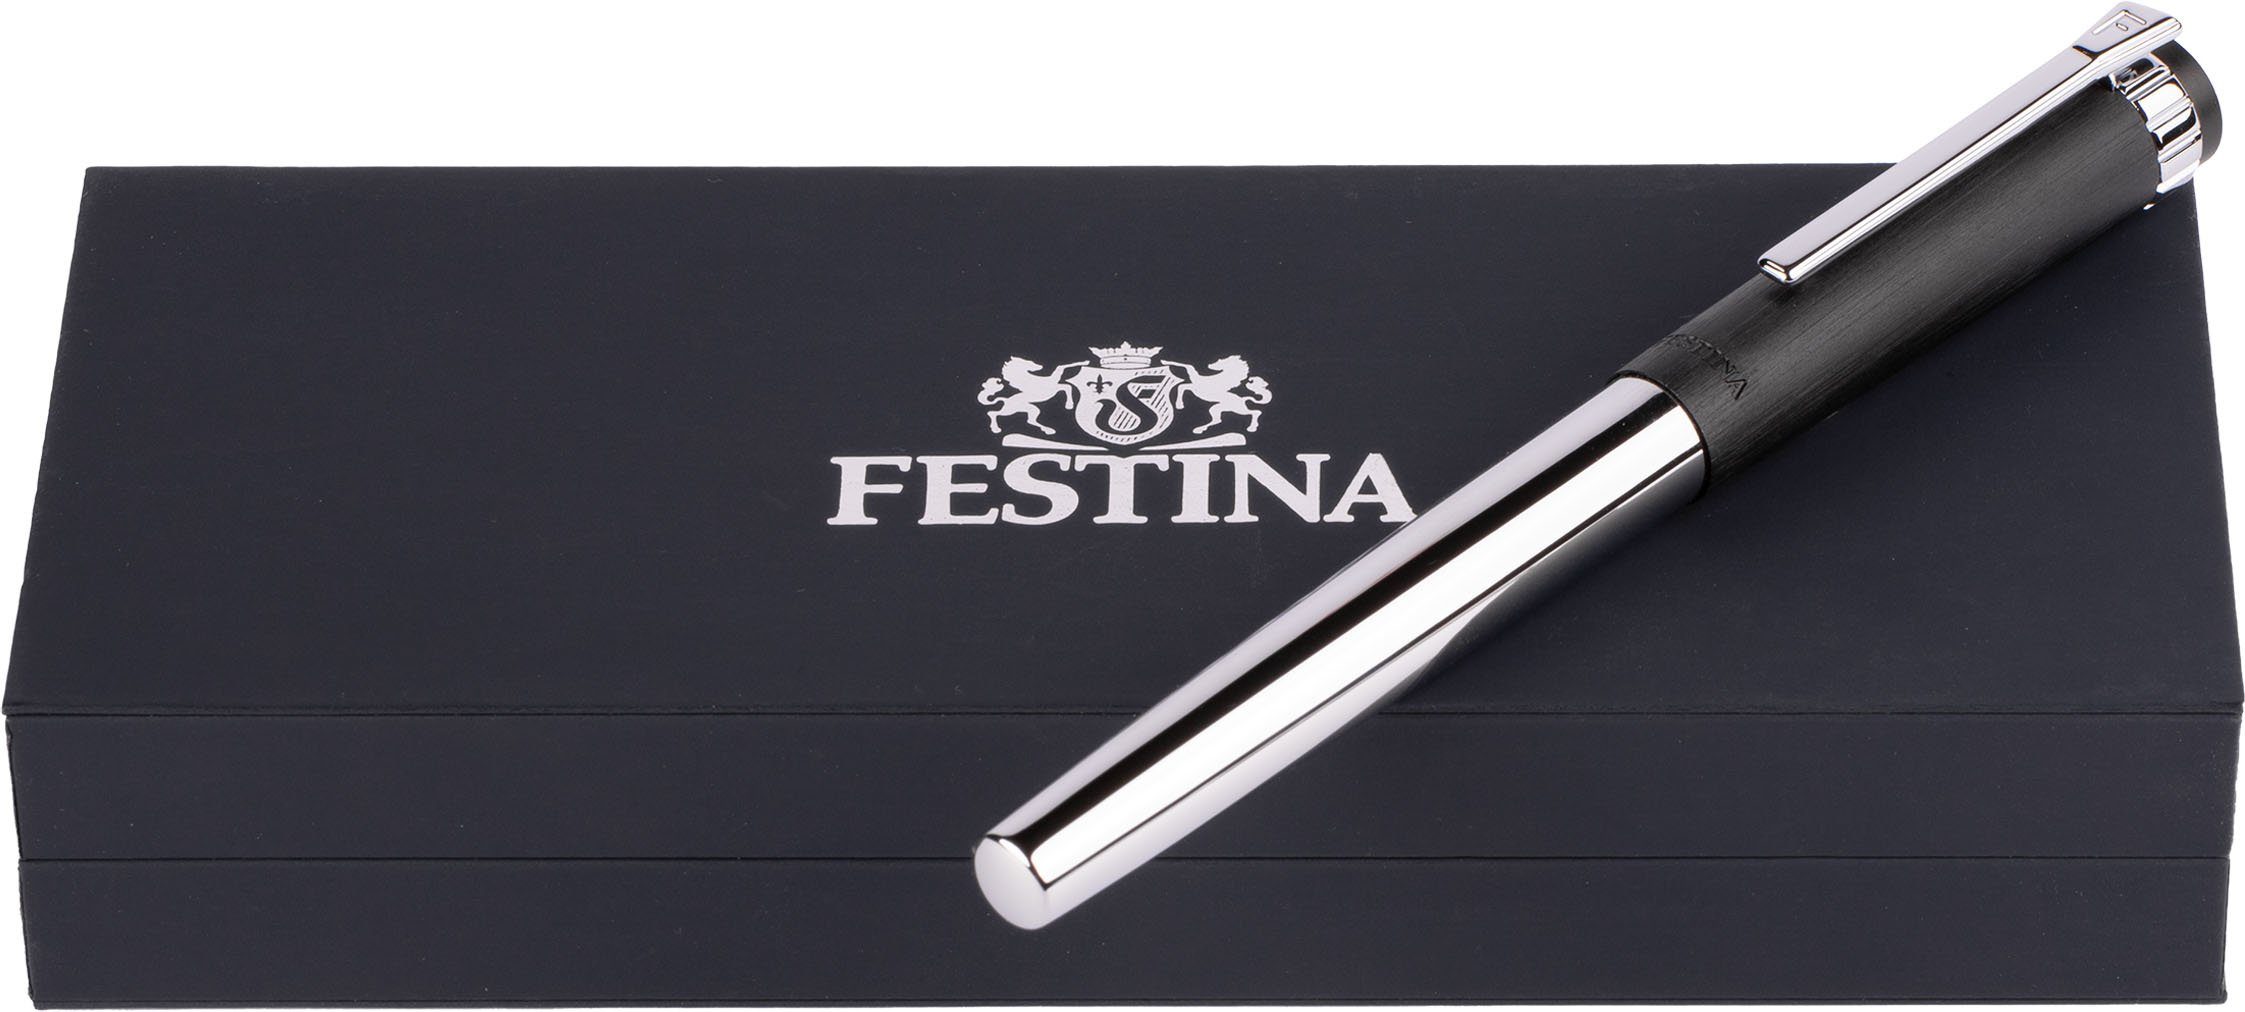 Festina ideal Geschenk Tintenroller Etui, Prestige, als FWS5109/A, inklusive auch